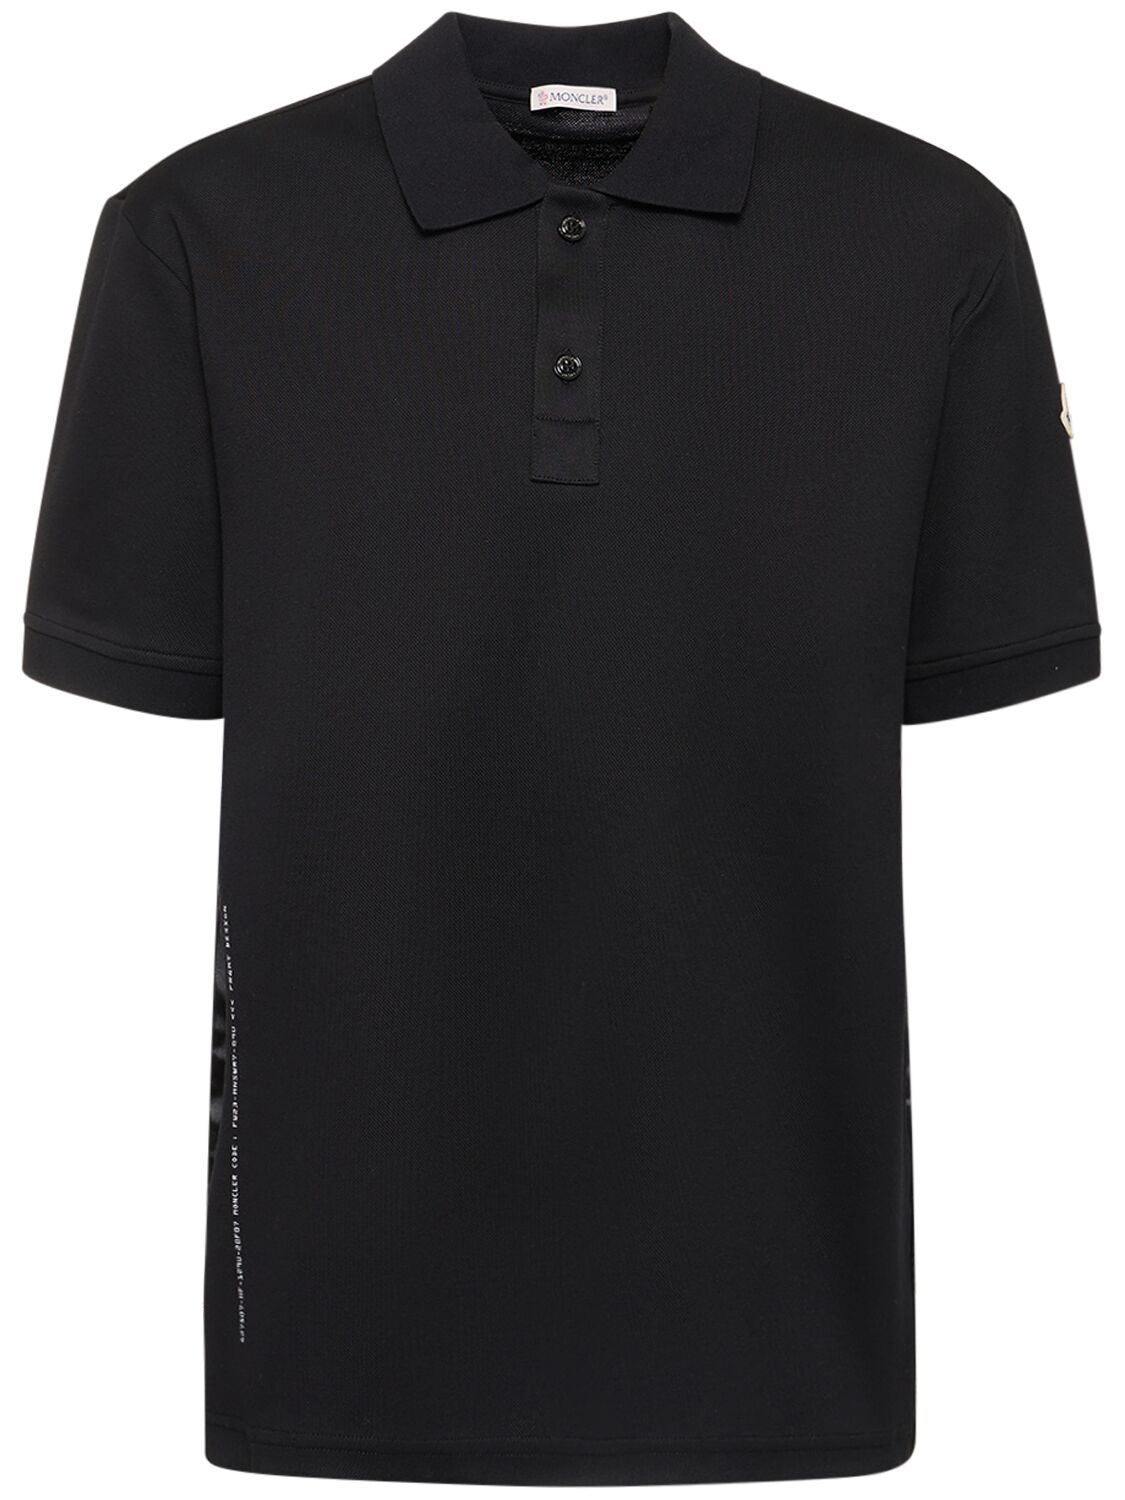 Moncler X Frgmt Cotton Piqué Polo Shirt